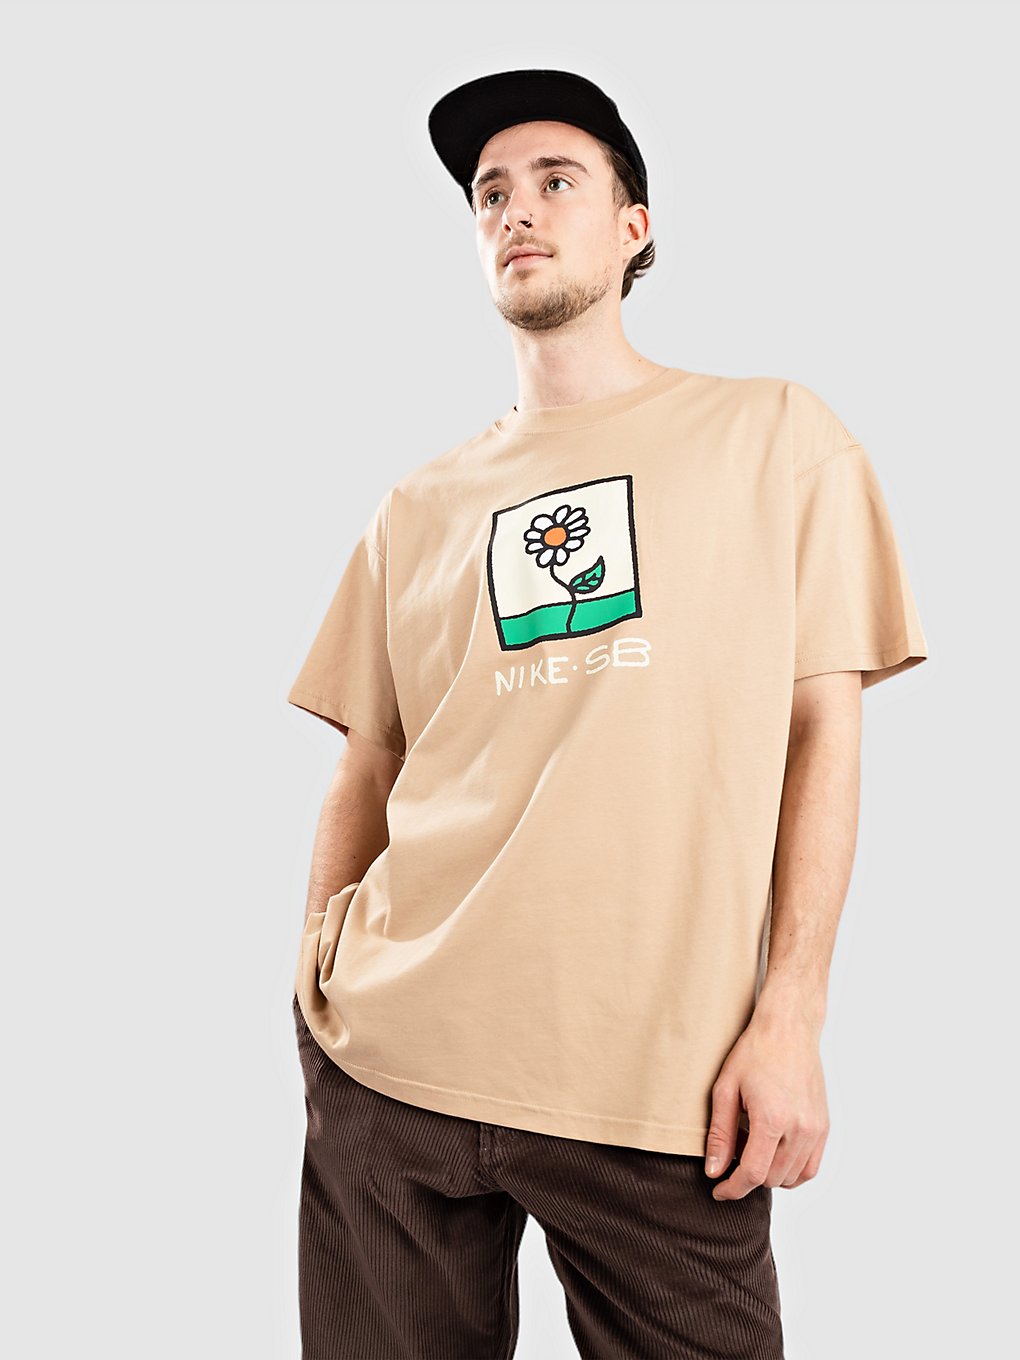 Image of Nike SB Daisy T-Shirt marrone